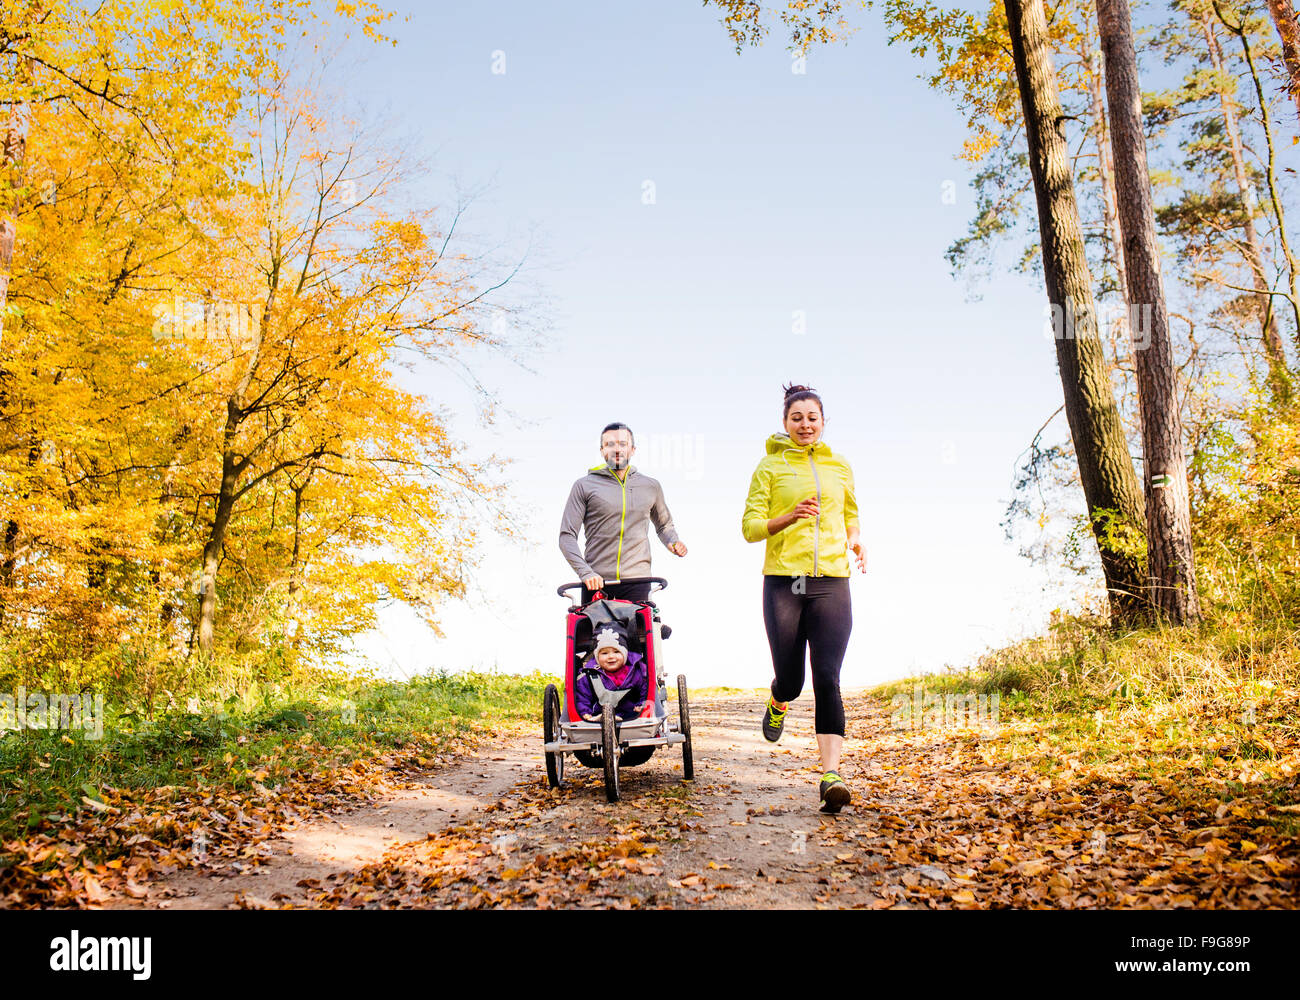 Schöne junge Familie mit Baby im Kinderwagen im Herbst Natur draußen laufen Joggen Stockfoto